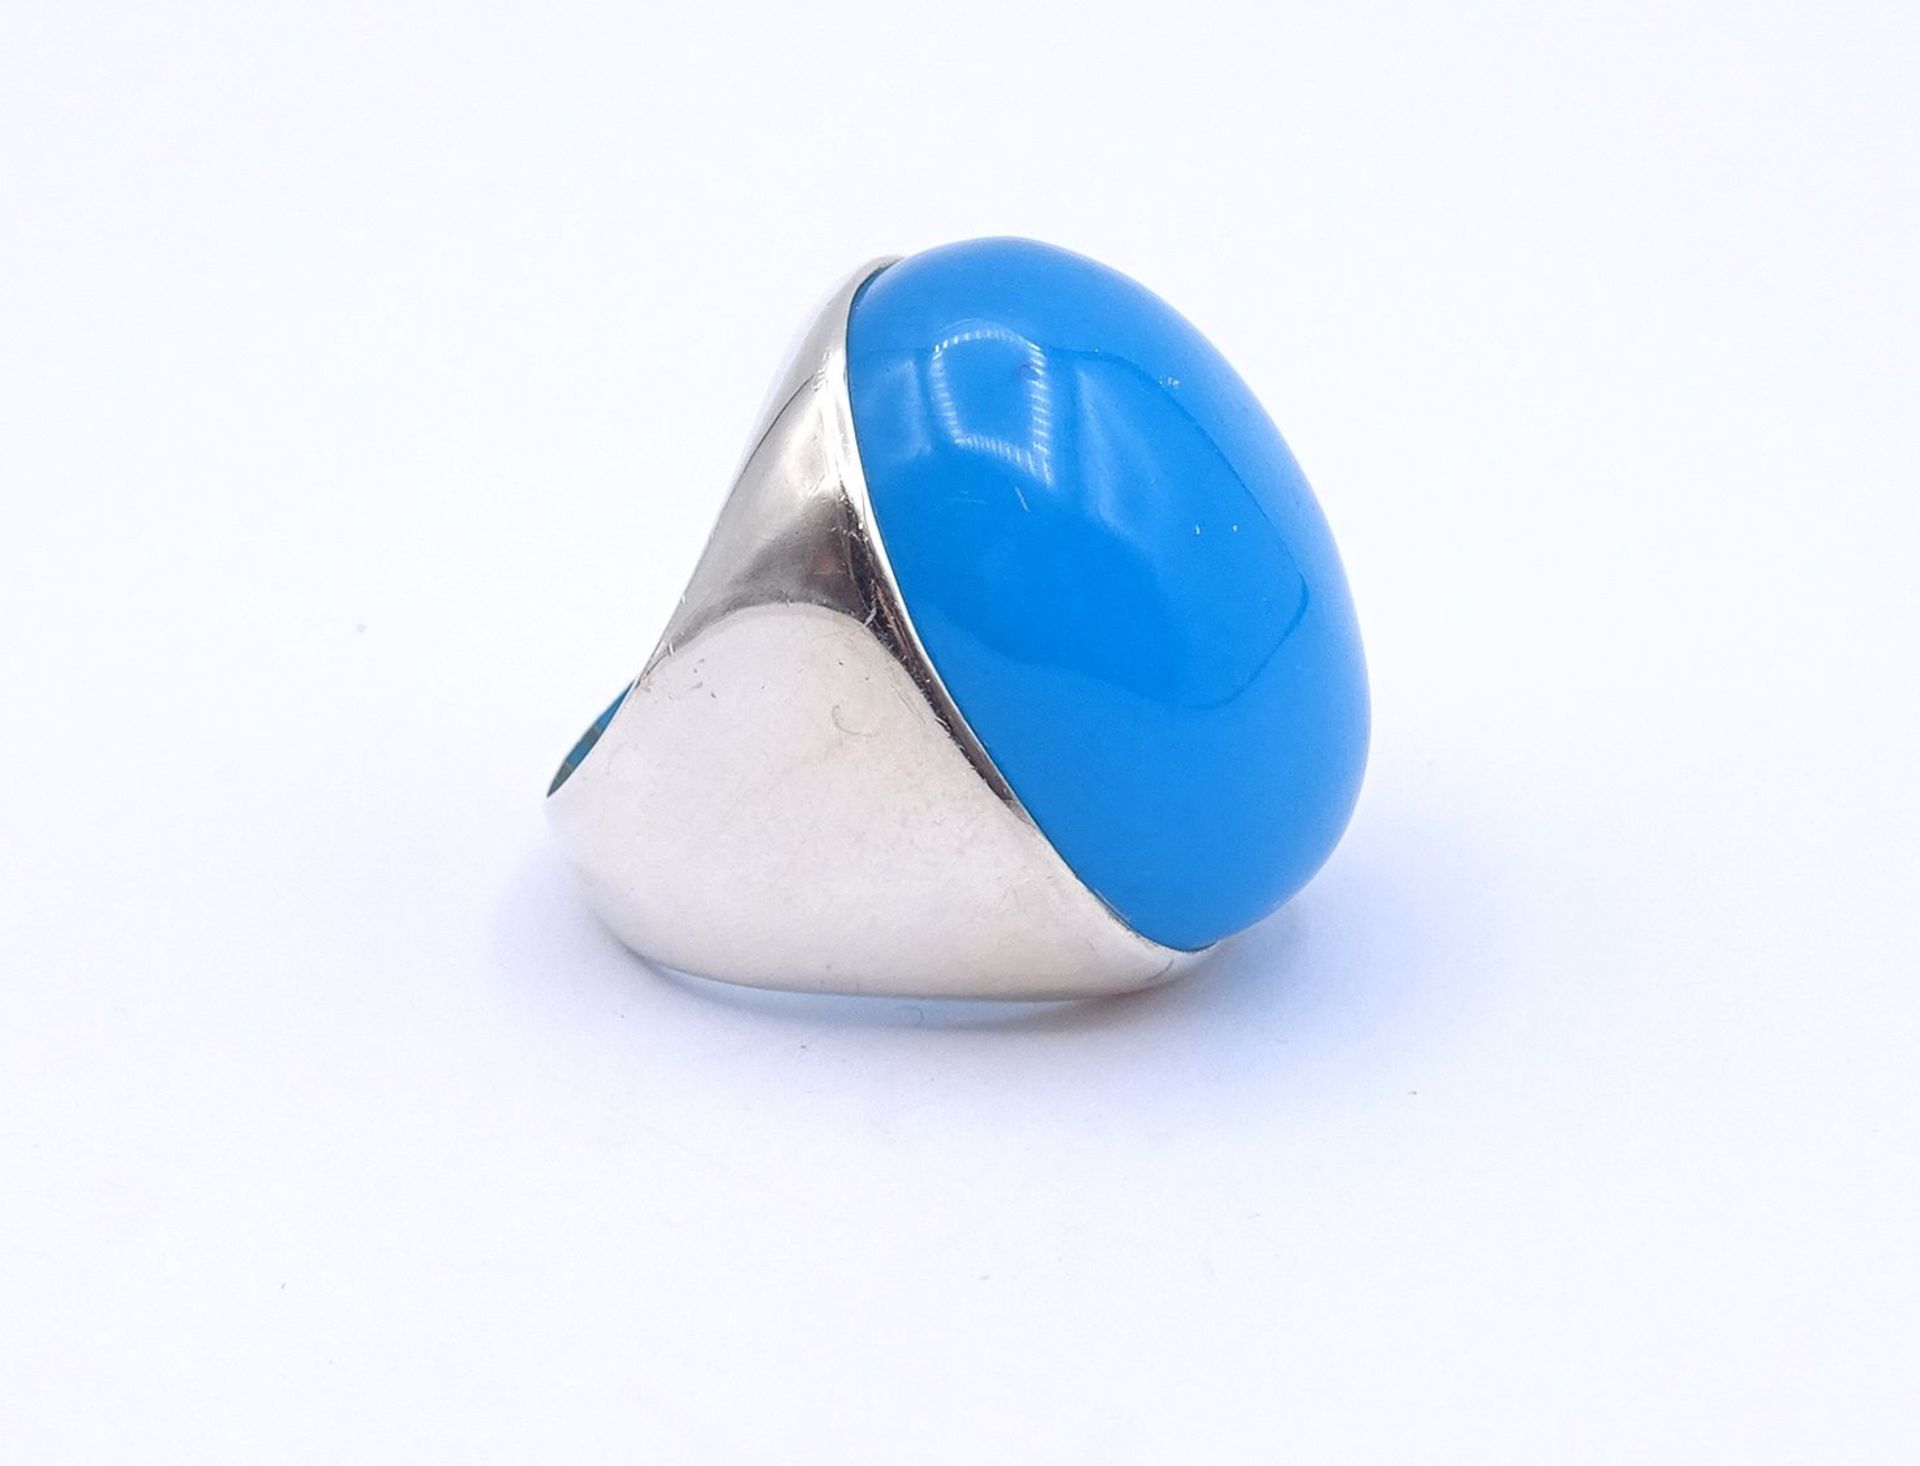 Silber Ring mit einem großen blauen Cabochon, 26g., RG 56, 29x24mm - Image 2 of 3